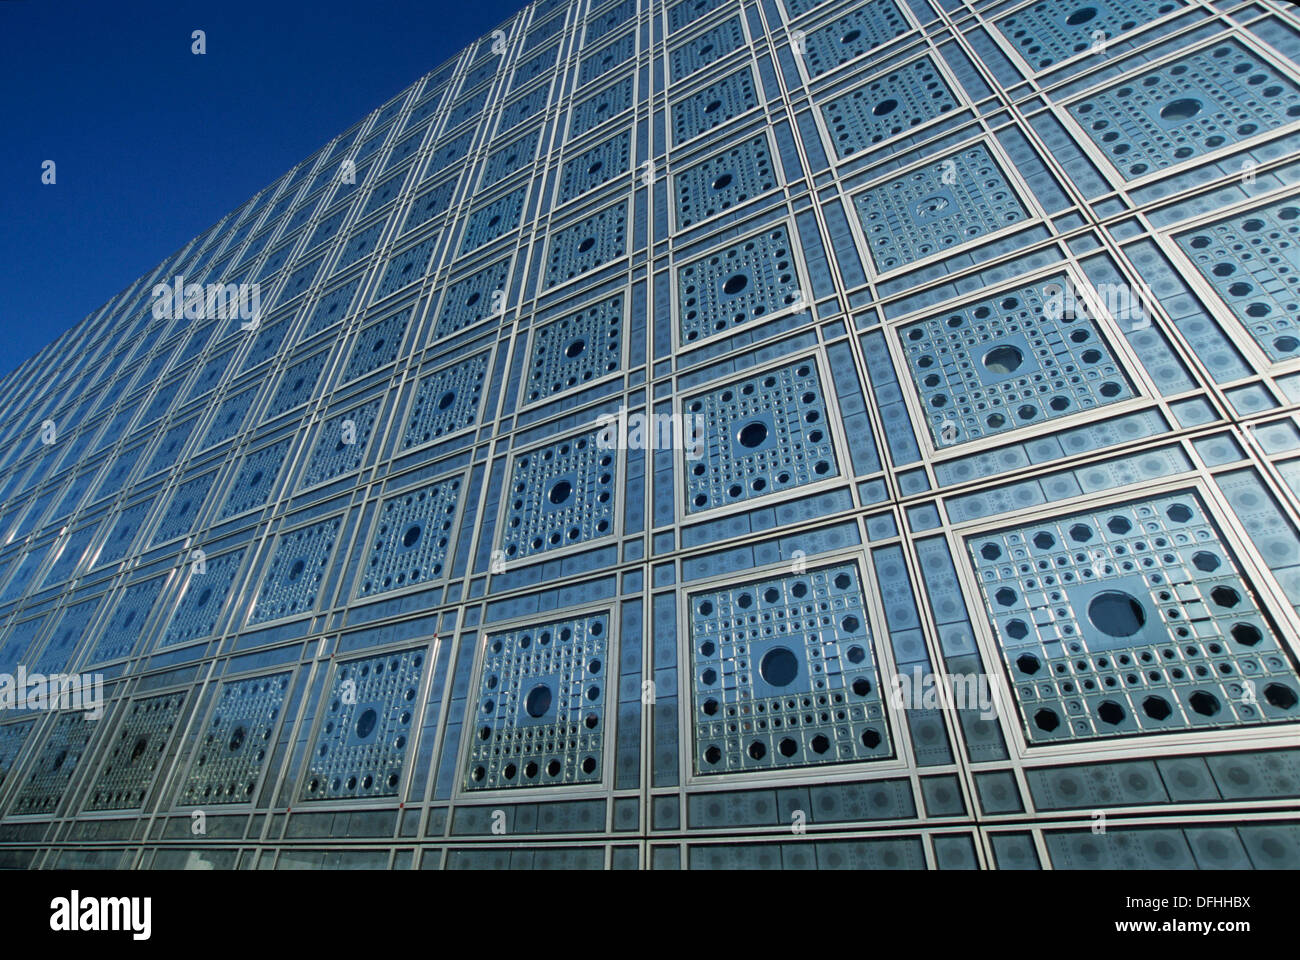 IMA, Institut du monde arabe, architect: Jean Nouvel, Paris, 5e arrondissement, Ile de France, France Stock Photo